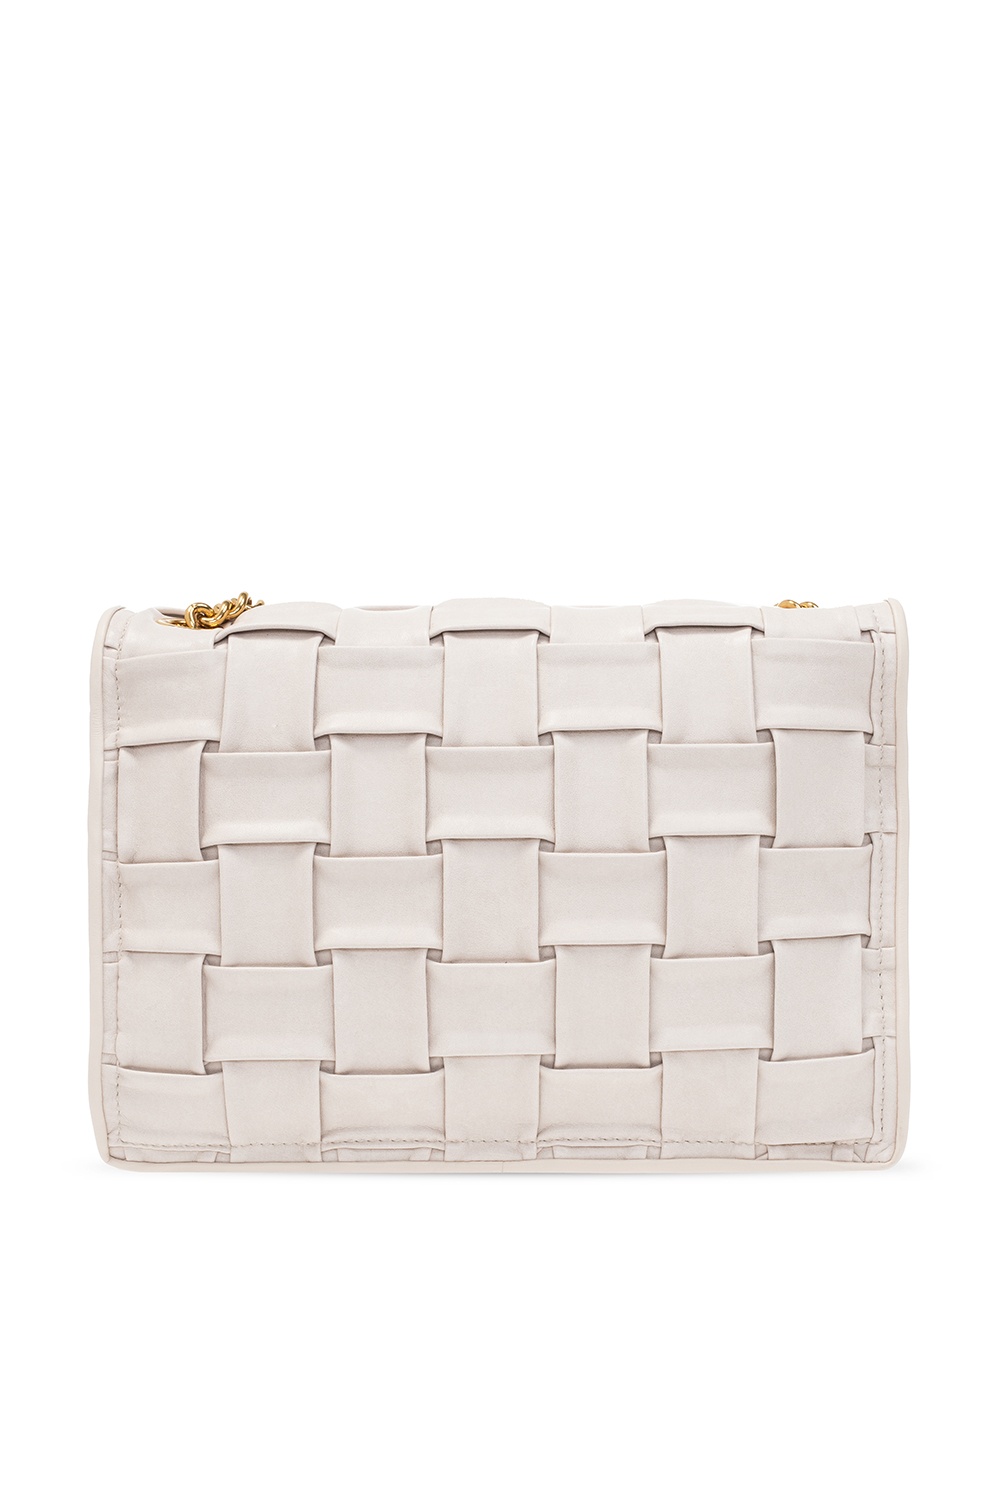 Alfredo Versace Long Wallet, Women's Fashion, Bags & Wallets